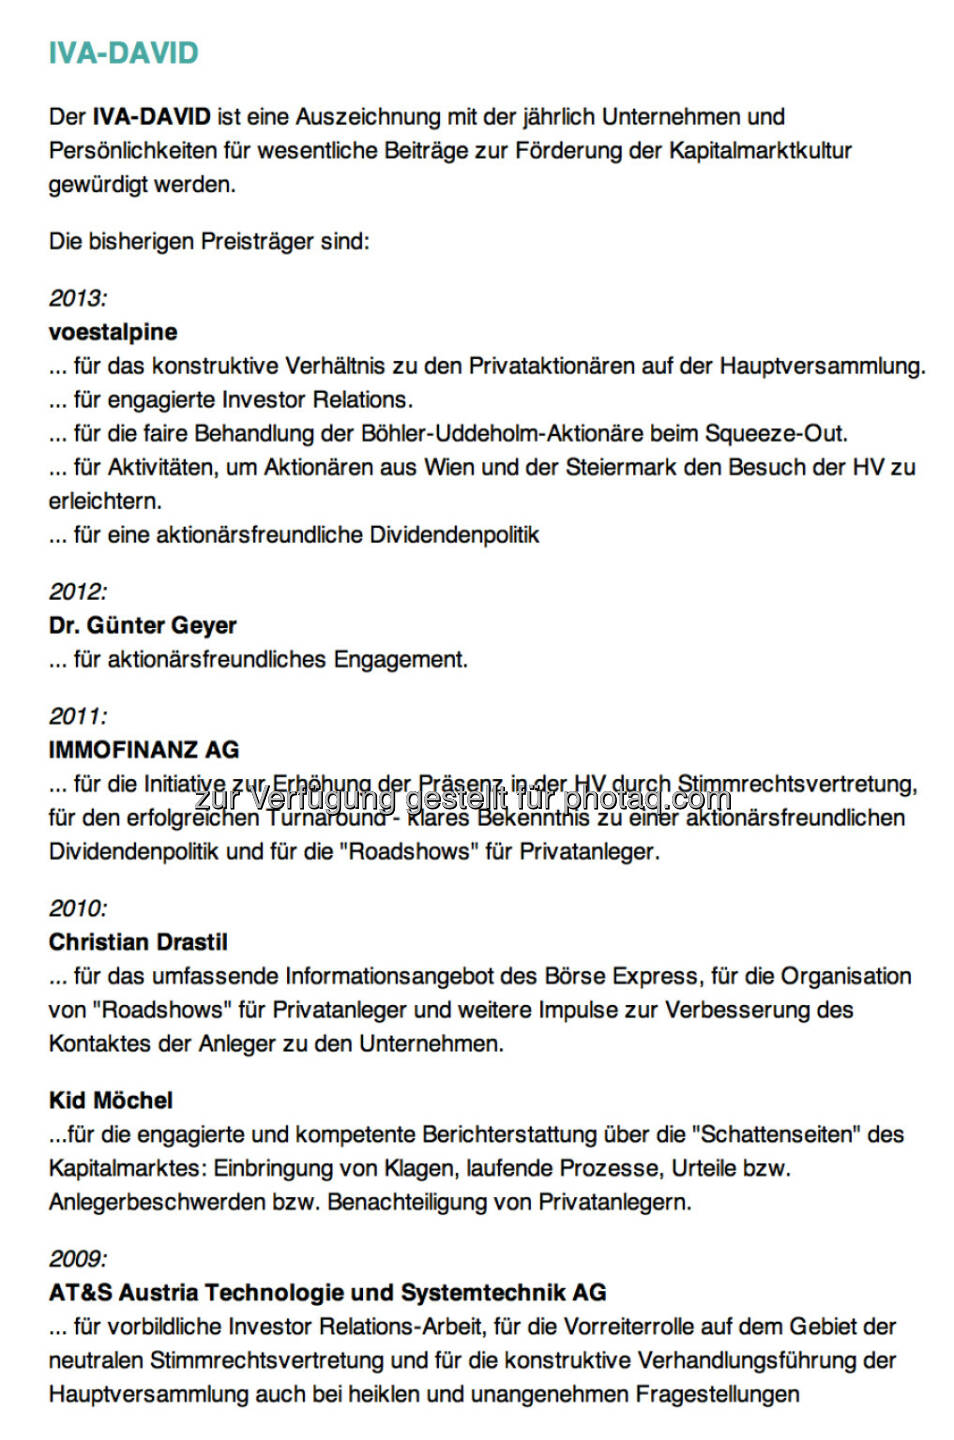 IVA-David-Siegertafel: 2013 voestalpine; 2012 Günter Geyer; 2011 Immofinanz; 2010 Christian Drastil, Kid Möchel; 2010 AT&S 